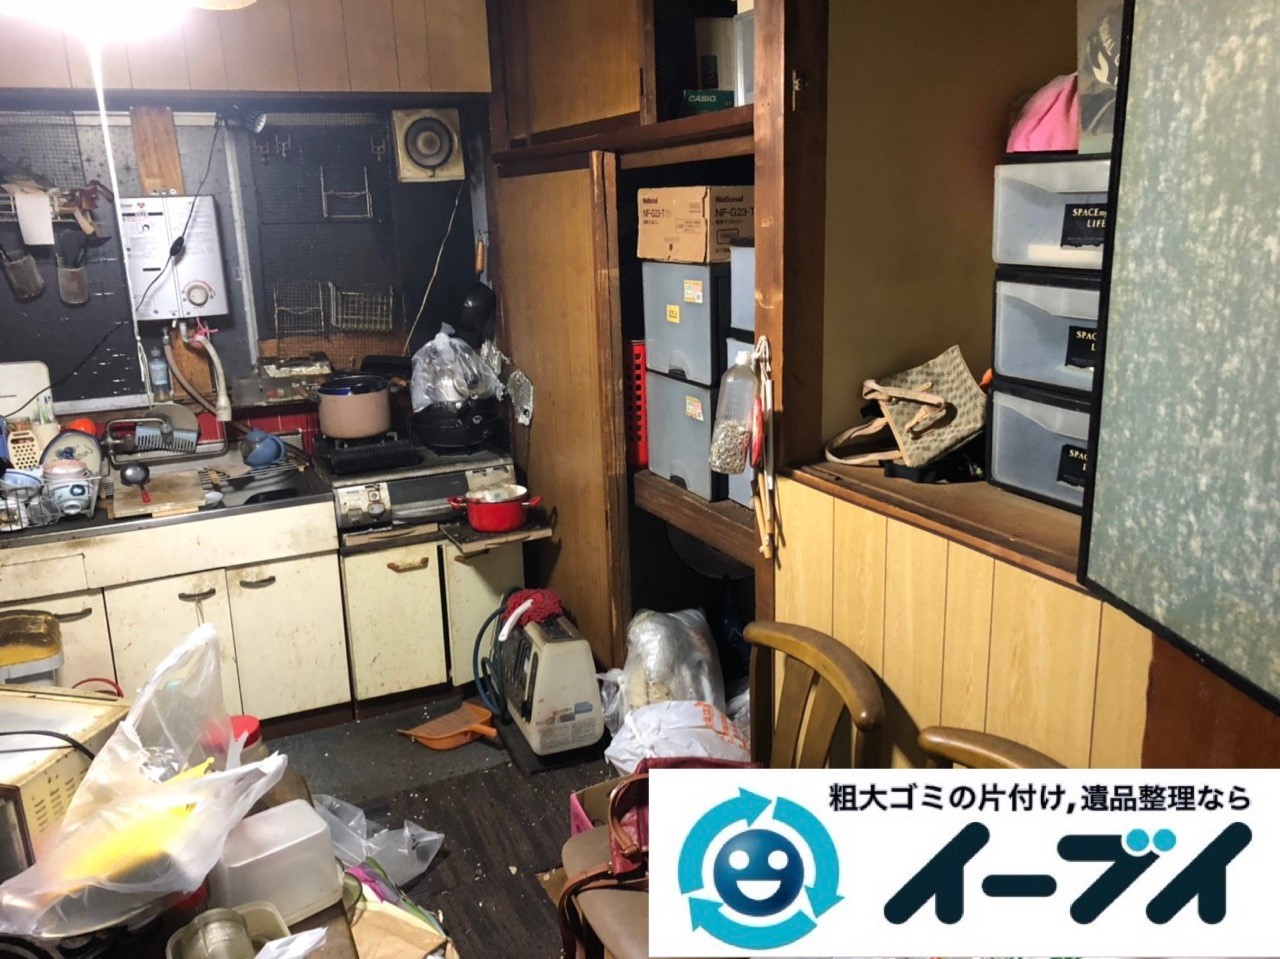 2019年4月10日大阪府堺市中区で生活ゴミや生活用品などが散乱し、ゴミ屋敷化した汚部屋の片付け作業。写真4